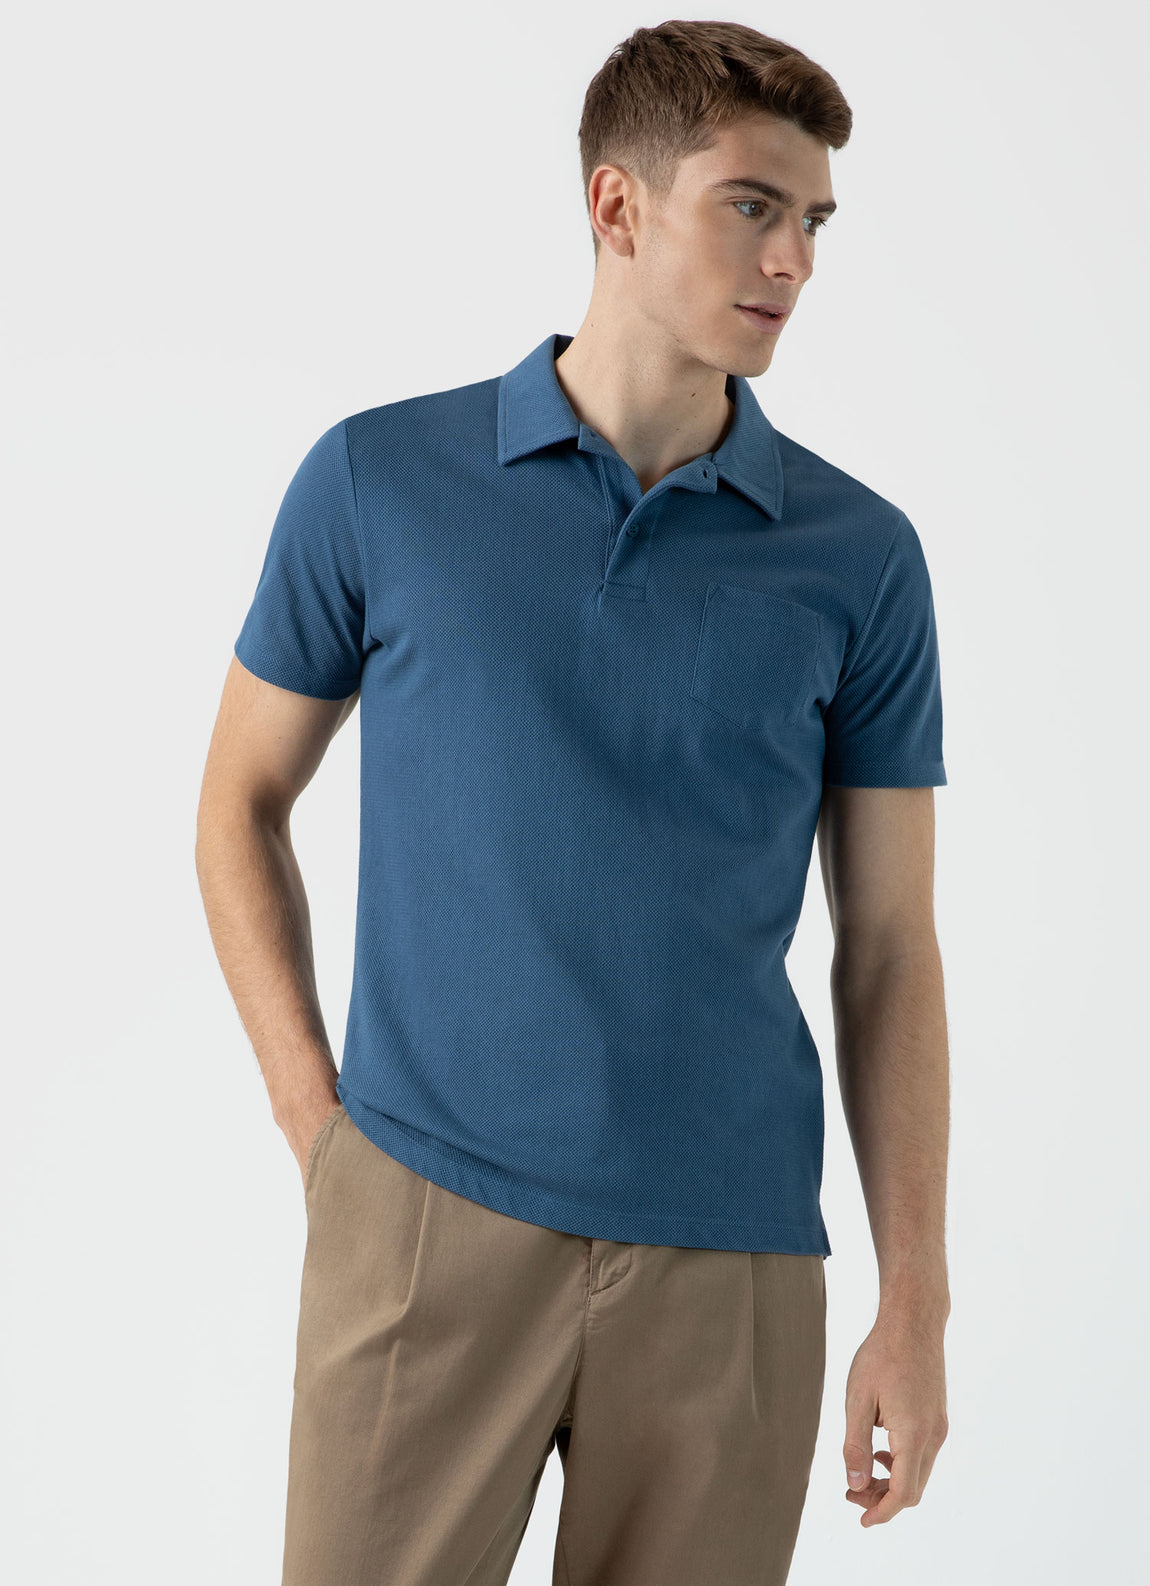 Men's Riviera Polo Shirt in Steel Blue | Sunspel